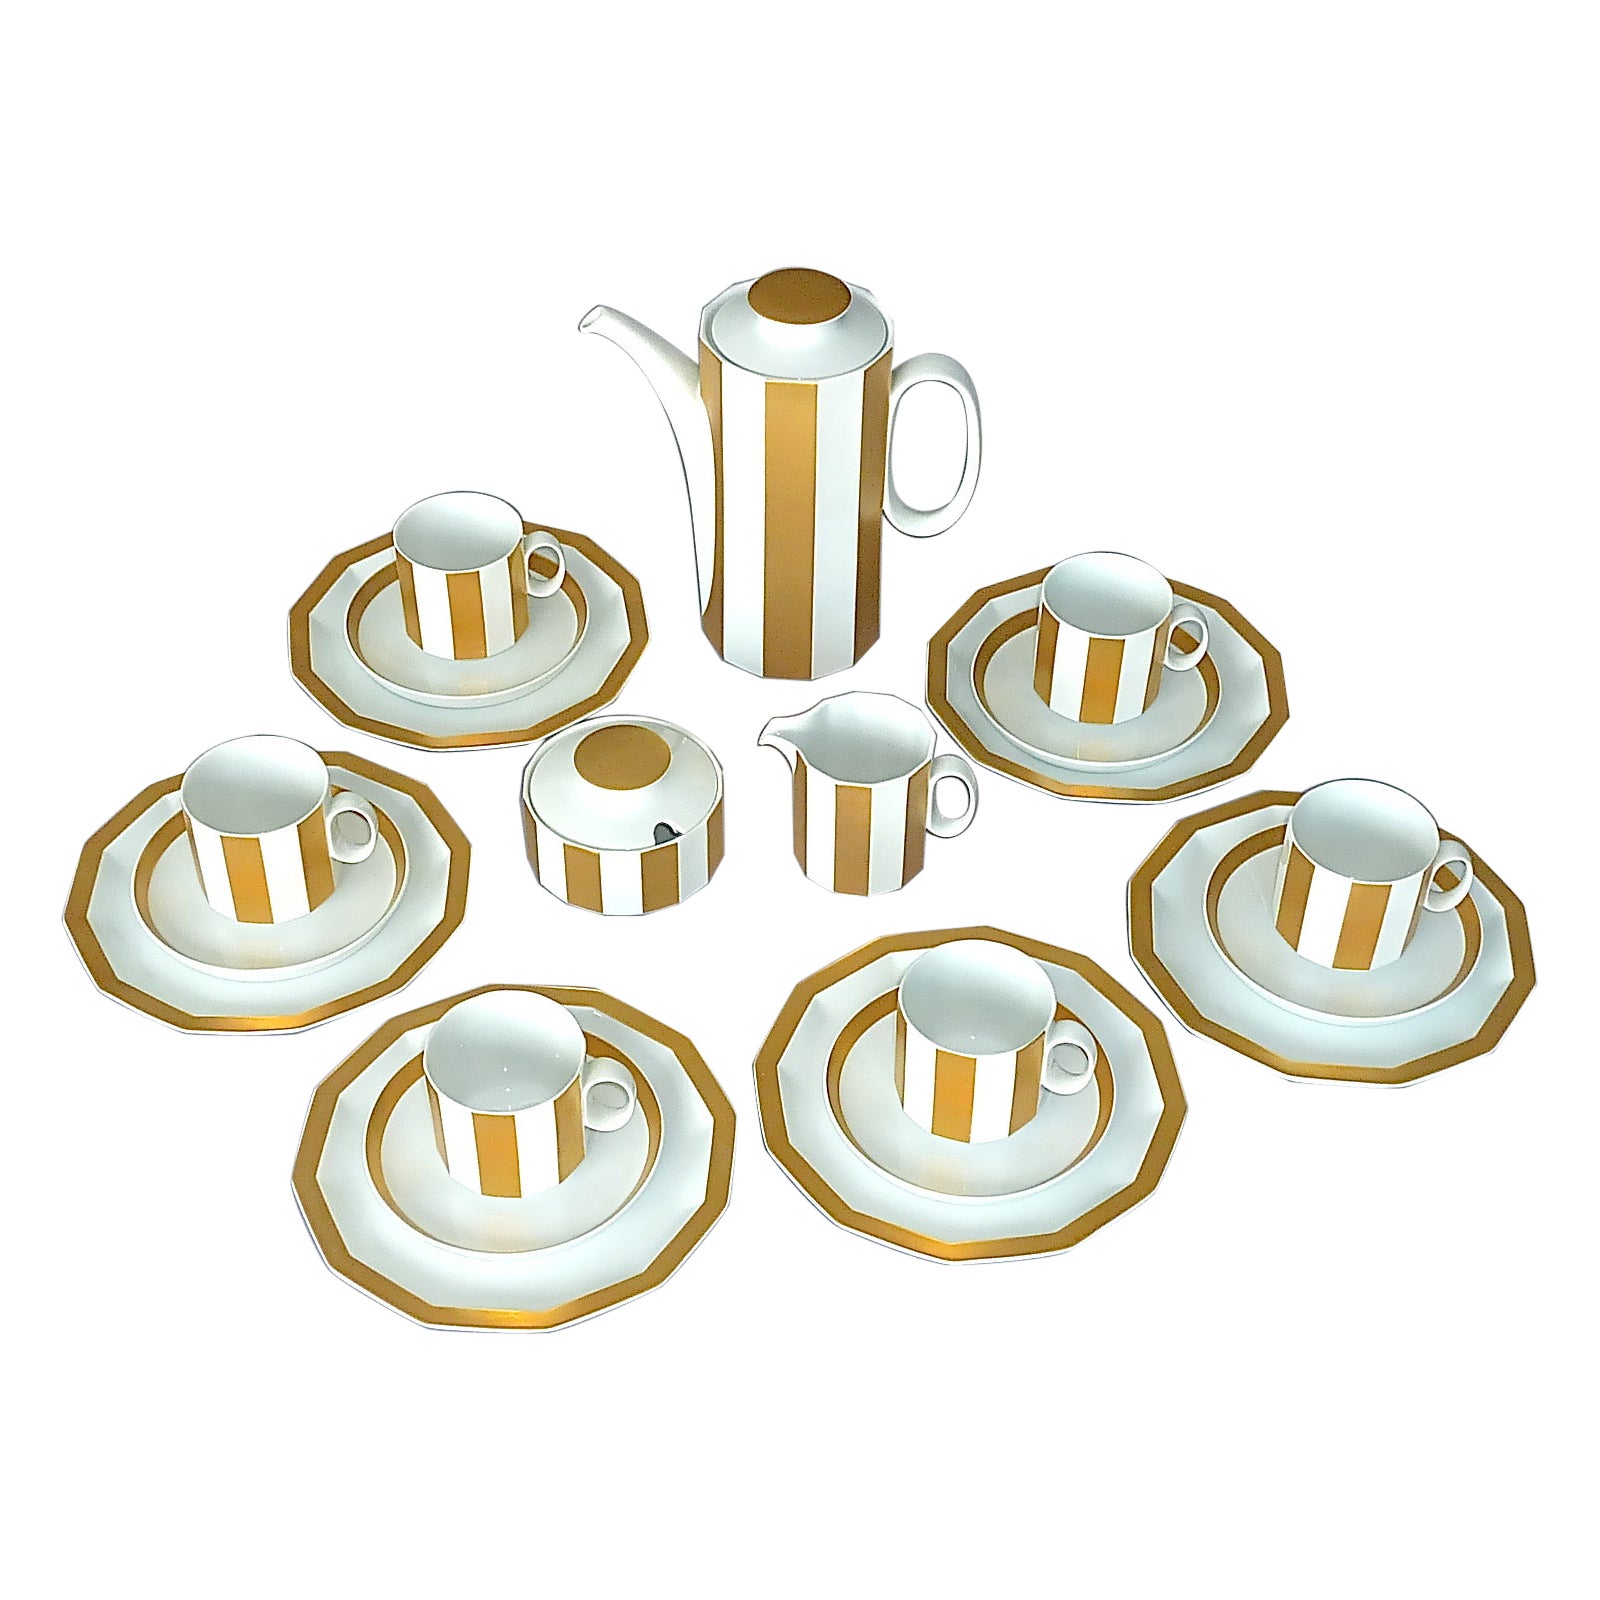 Fine Midcentury Tapio Wirkkala Rosenthal Coffee Set Gilt White Porcelain 1960s For Sale